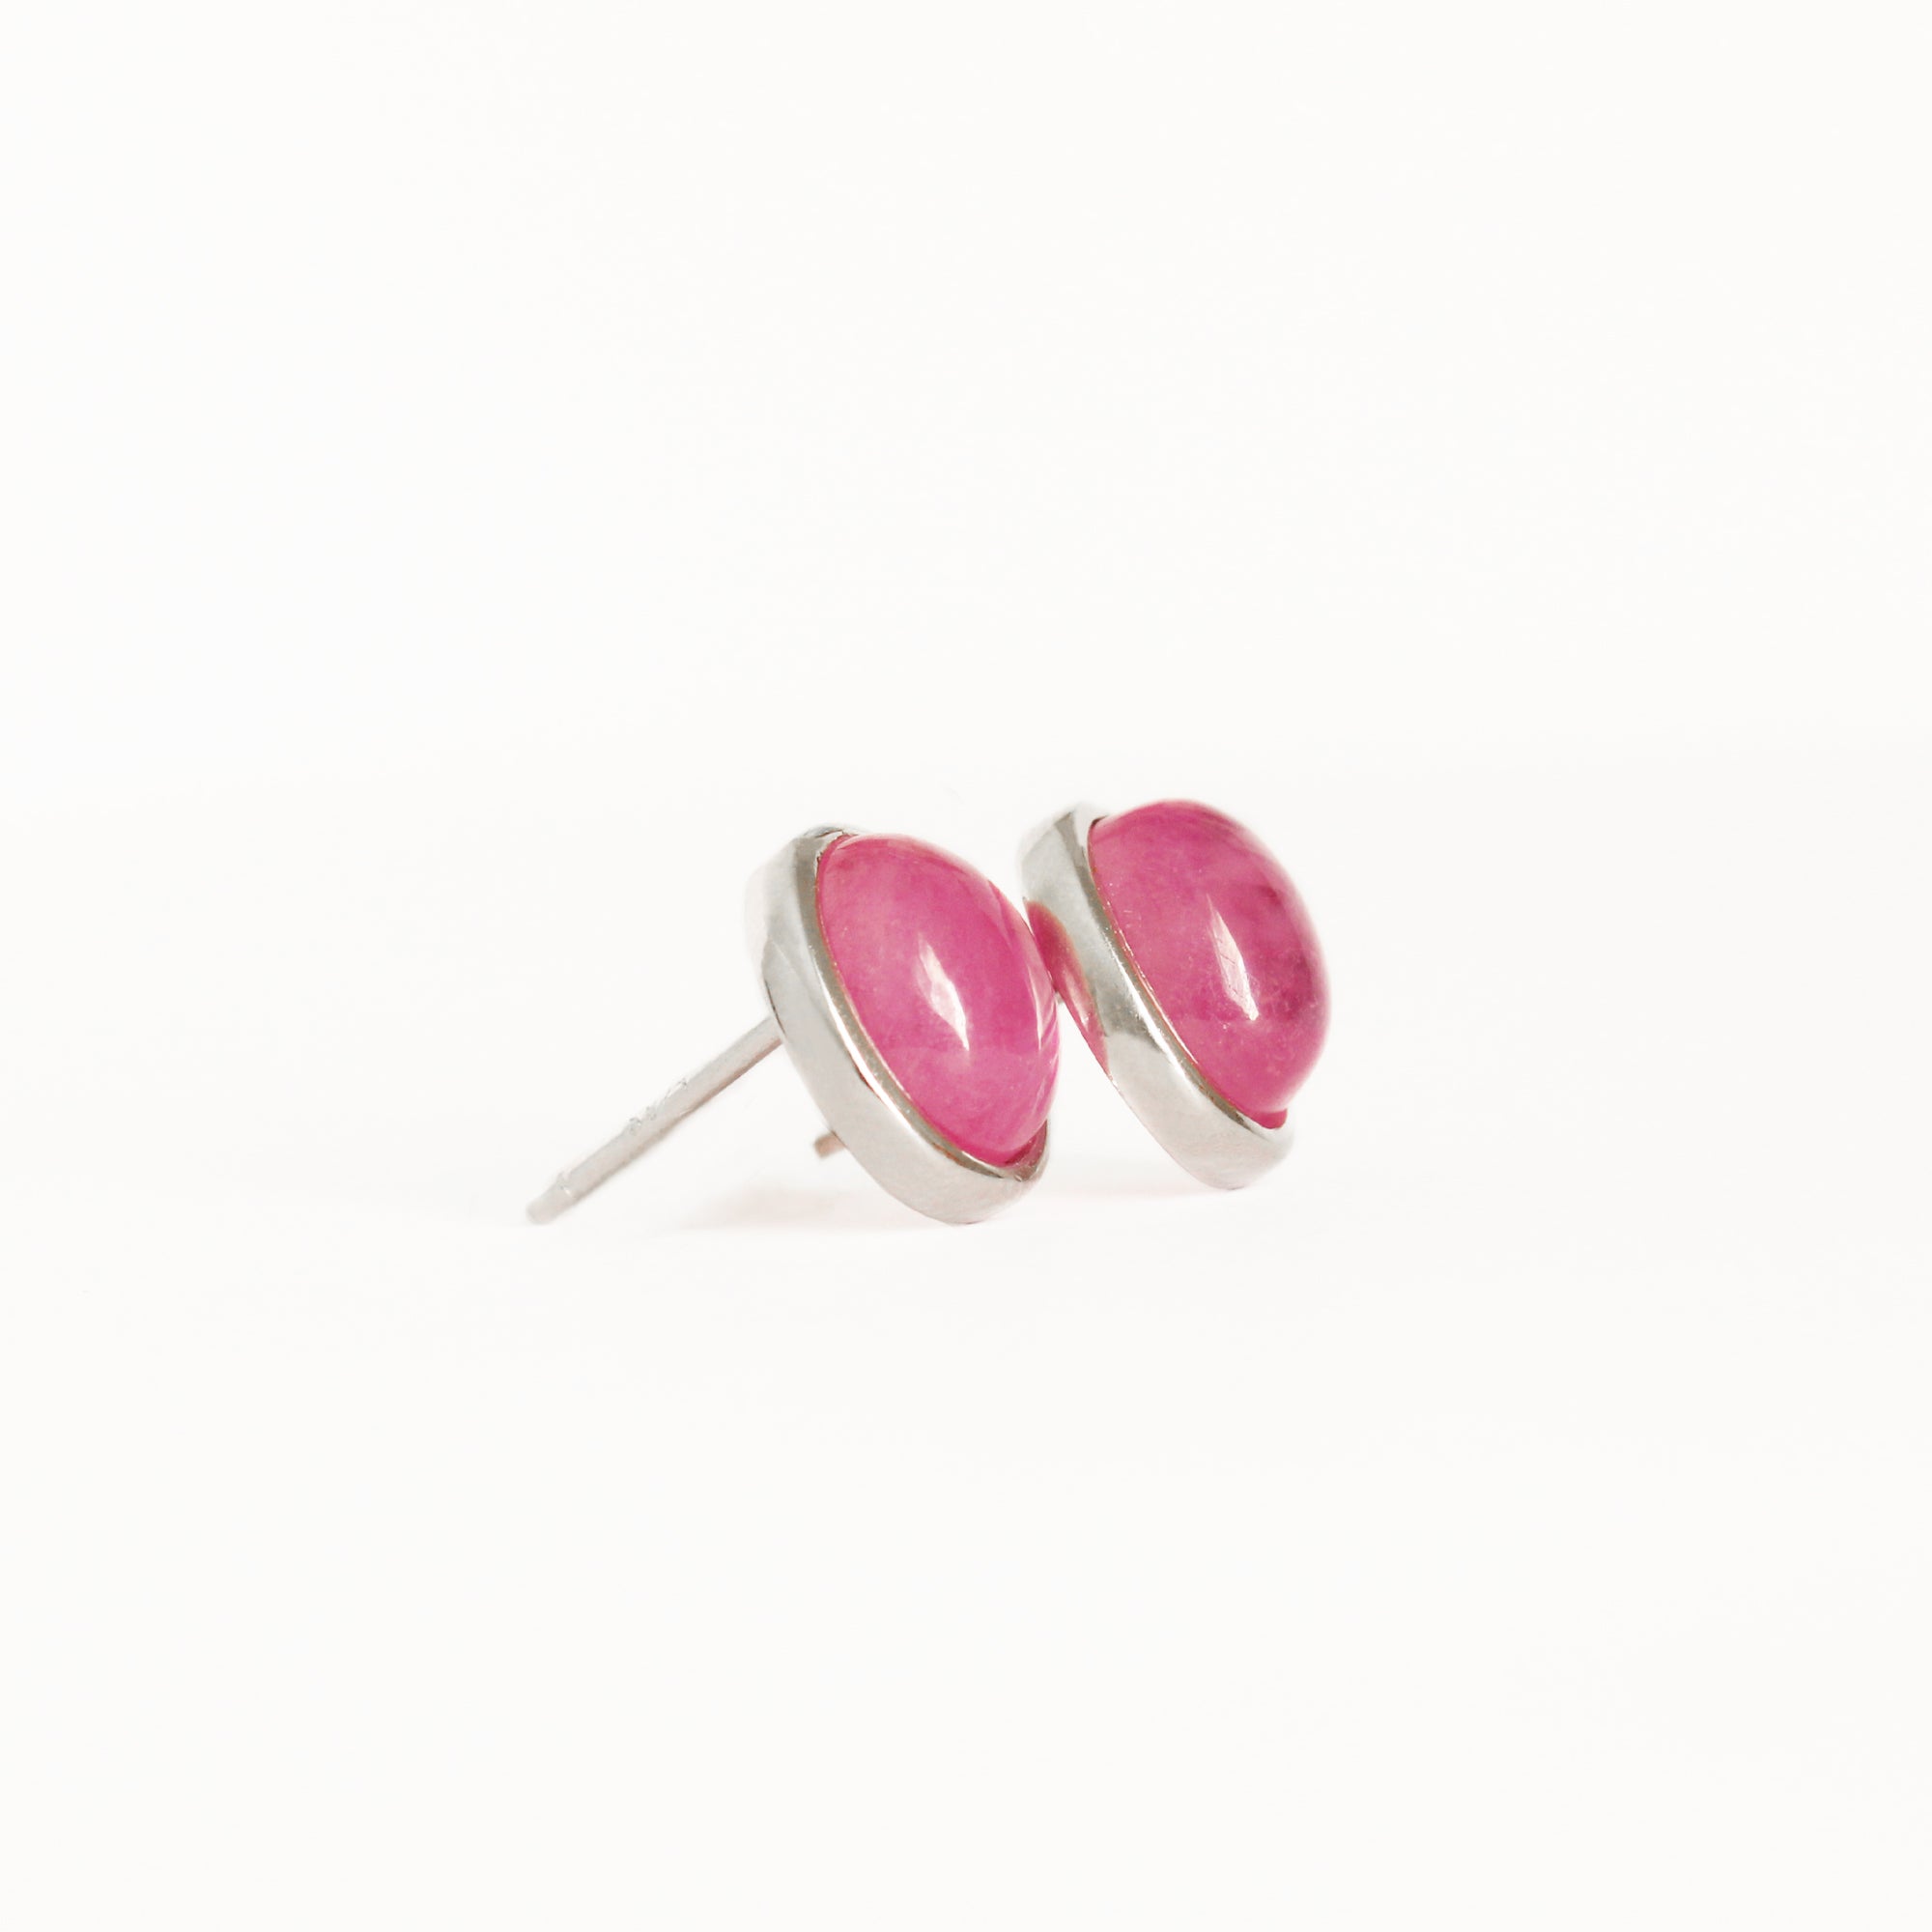 Silver Cabochon Oval Cut Ruby Earrings